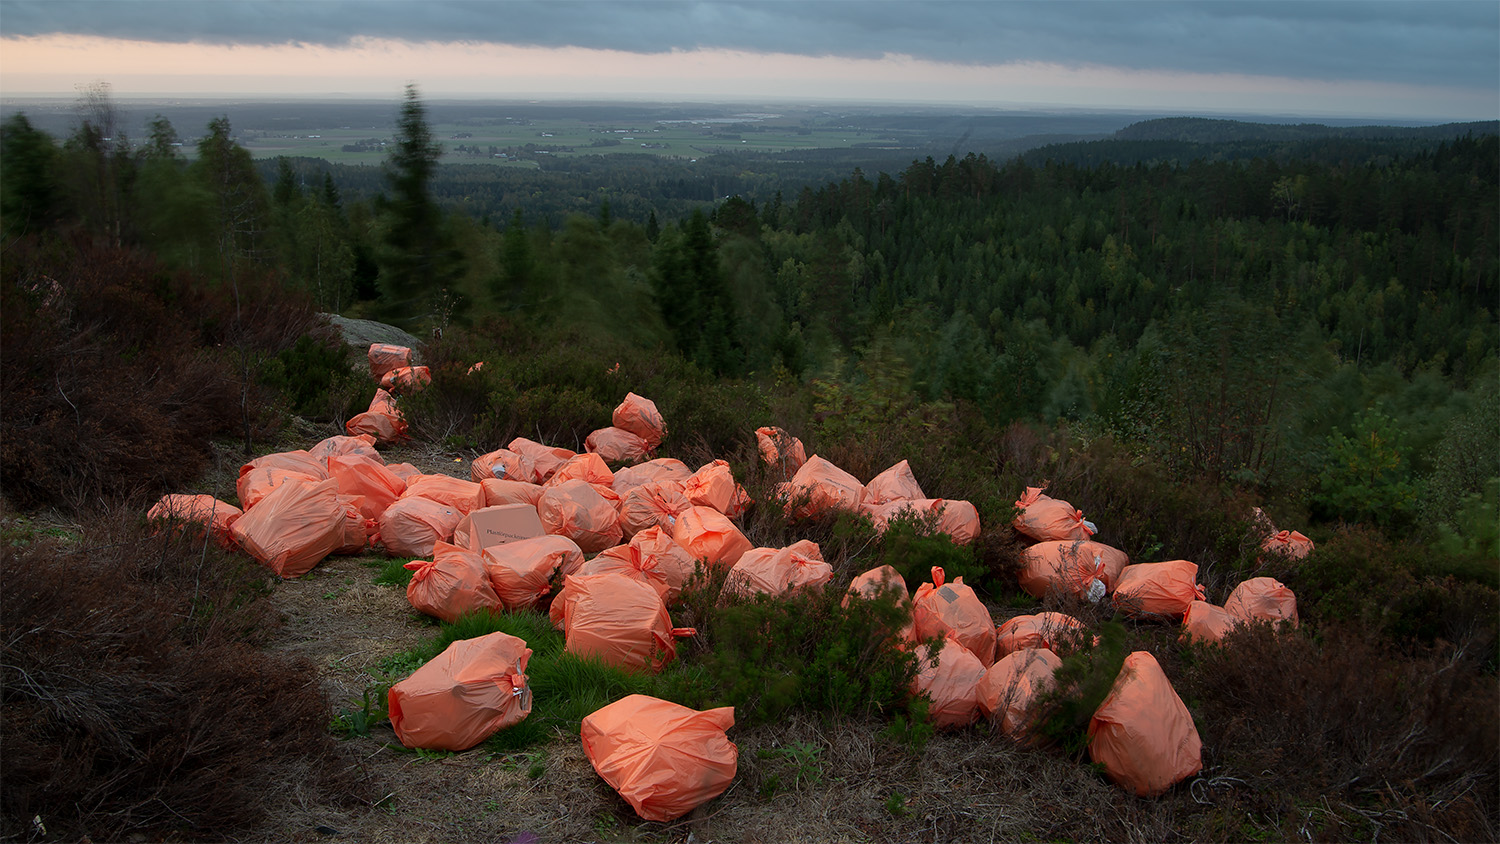 Konstnären Mattias Käll har fotat orange sopsäckar som ligger utspridda i ett sommarlandskap. Över hänger en mörkare himmel och i bakgrunden skymtar skogen.